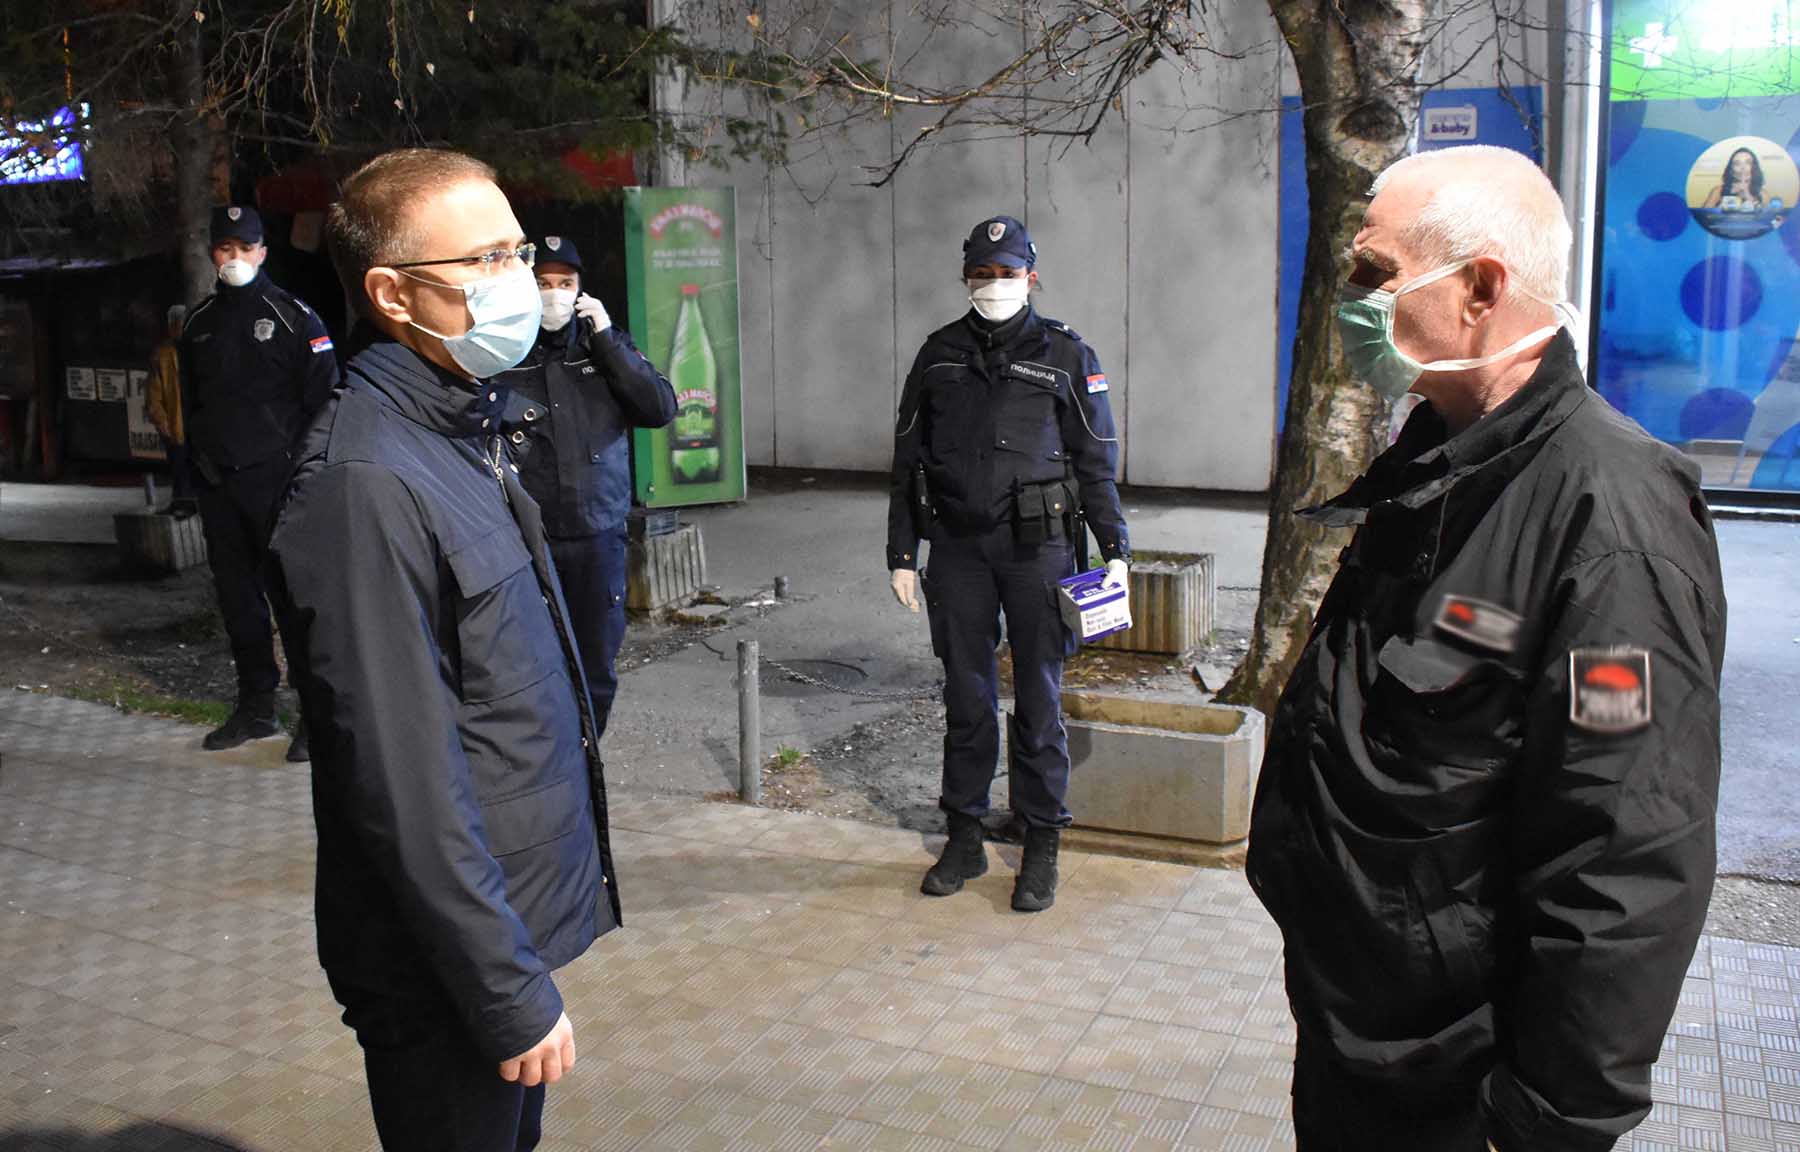 Ministar Stefanović obišao više prodavnica u kojima su penzioneri kupovali namirnice i zahvalio im na disciplinovanom ponašanju